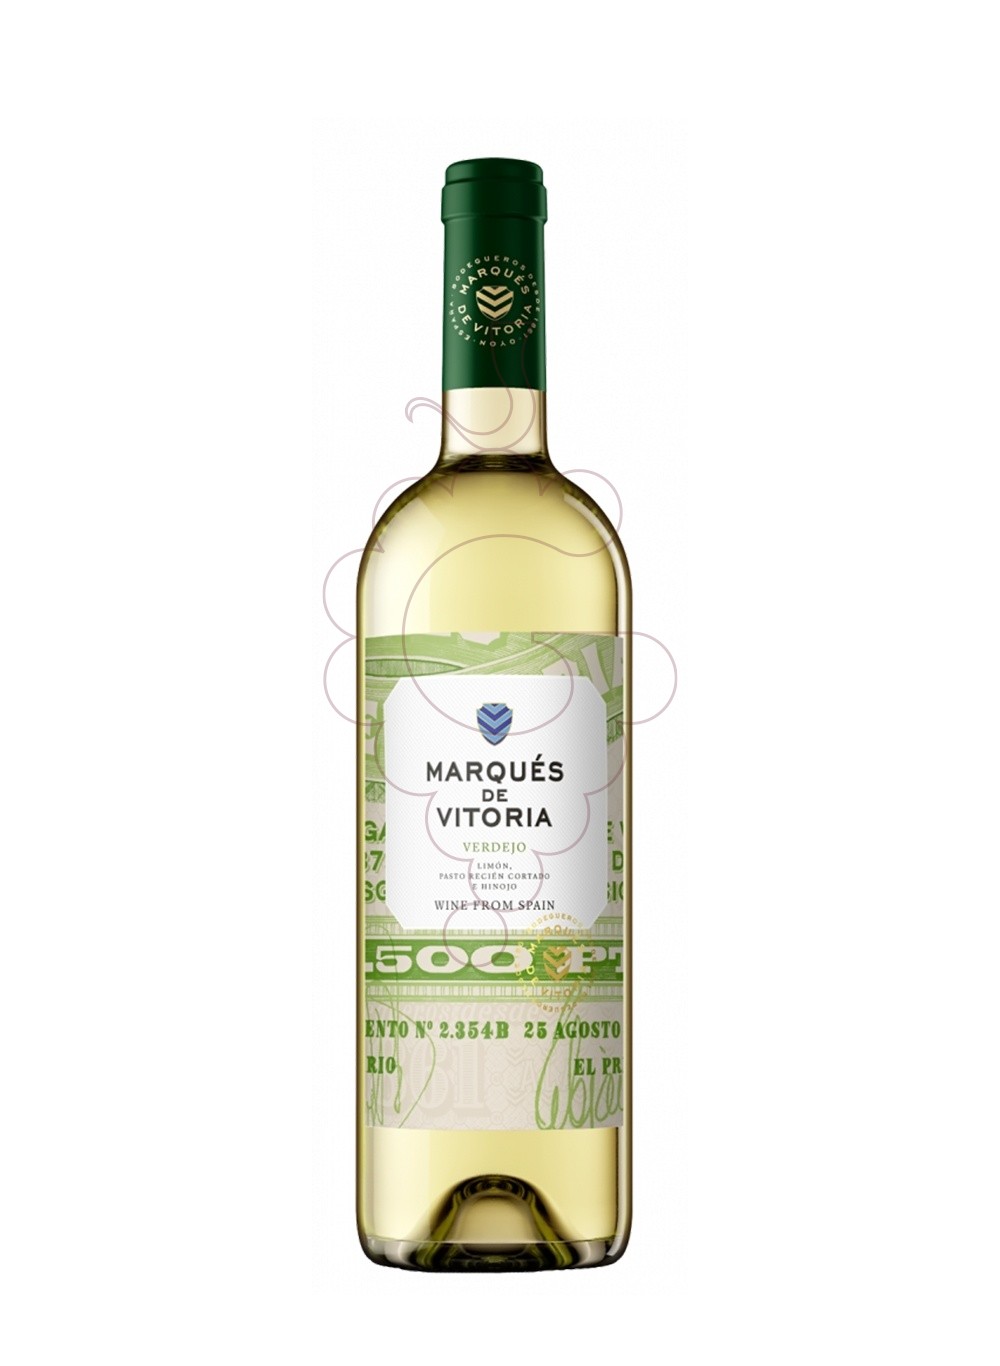 Foto Marqués de Vitoria Verdejo vino blanco